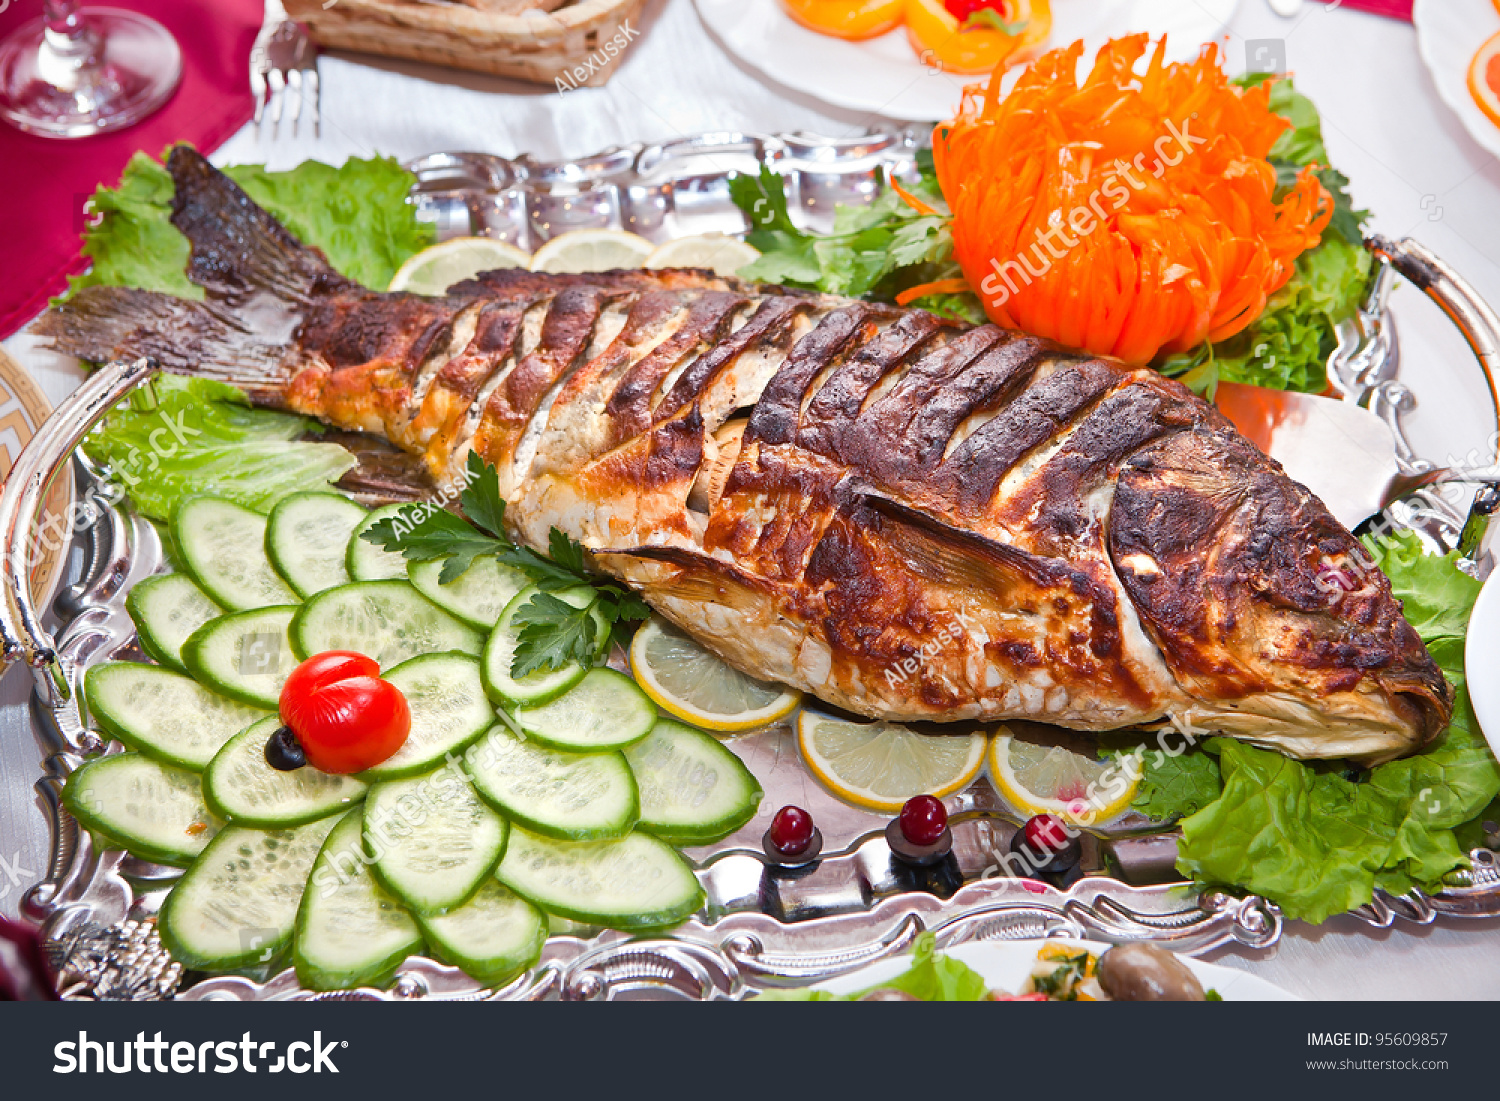 7 блюд из рыбы